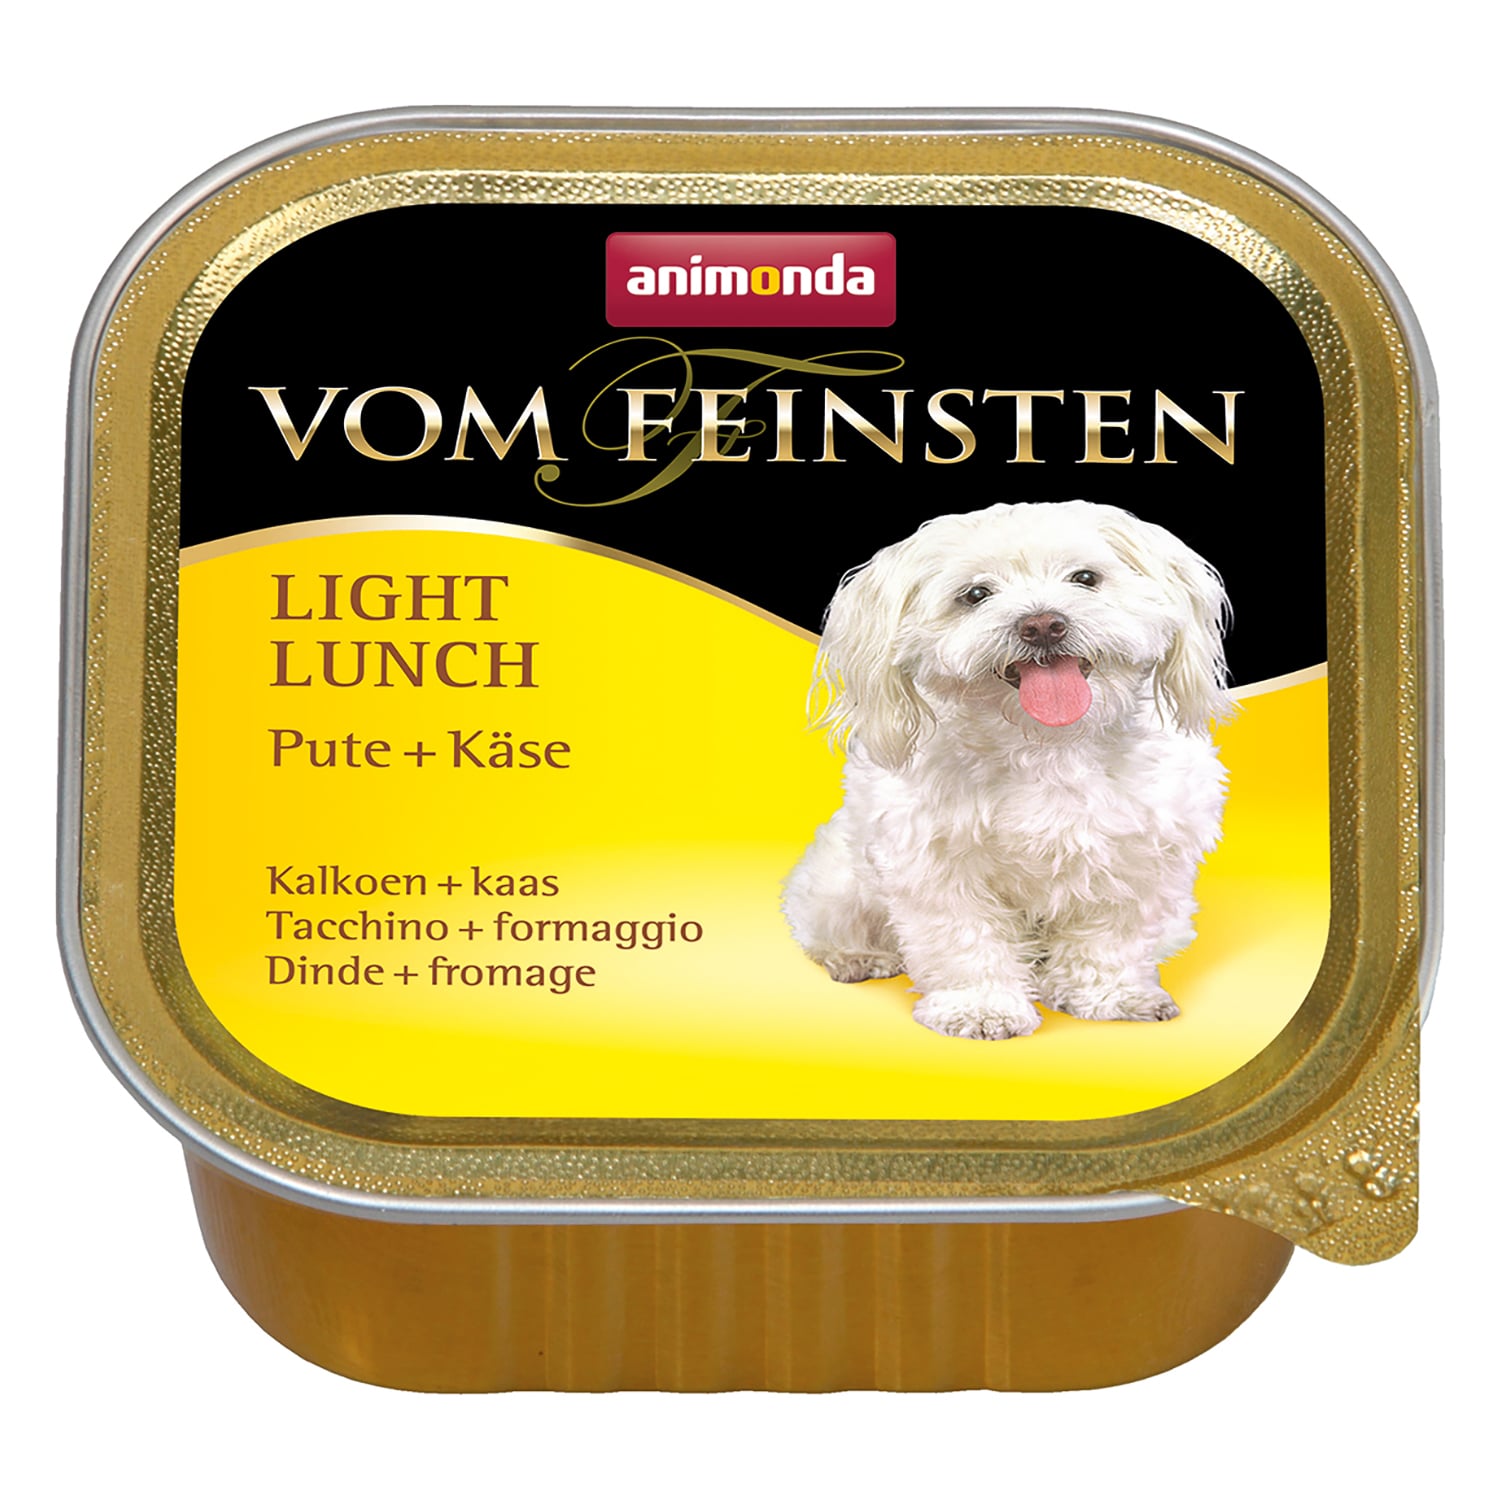 Vom Feinsten Light Lunch консервы для собак, облегченное меню с индейкой и сыром, Animonda от зоомагазина Дино Зоо